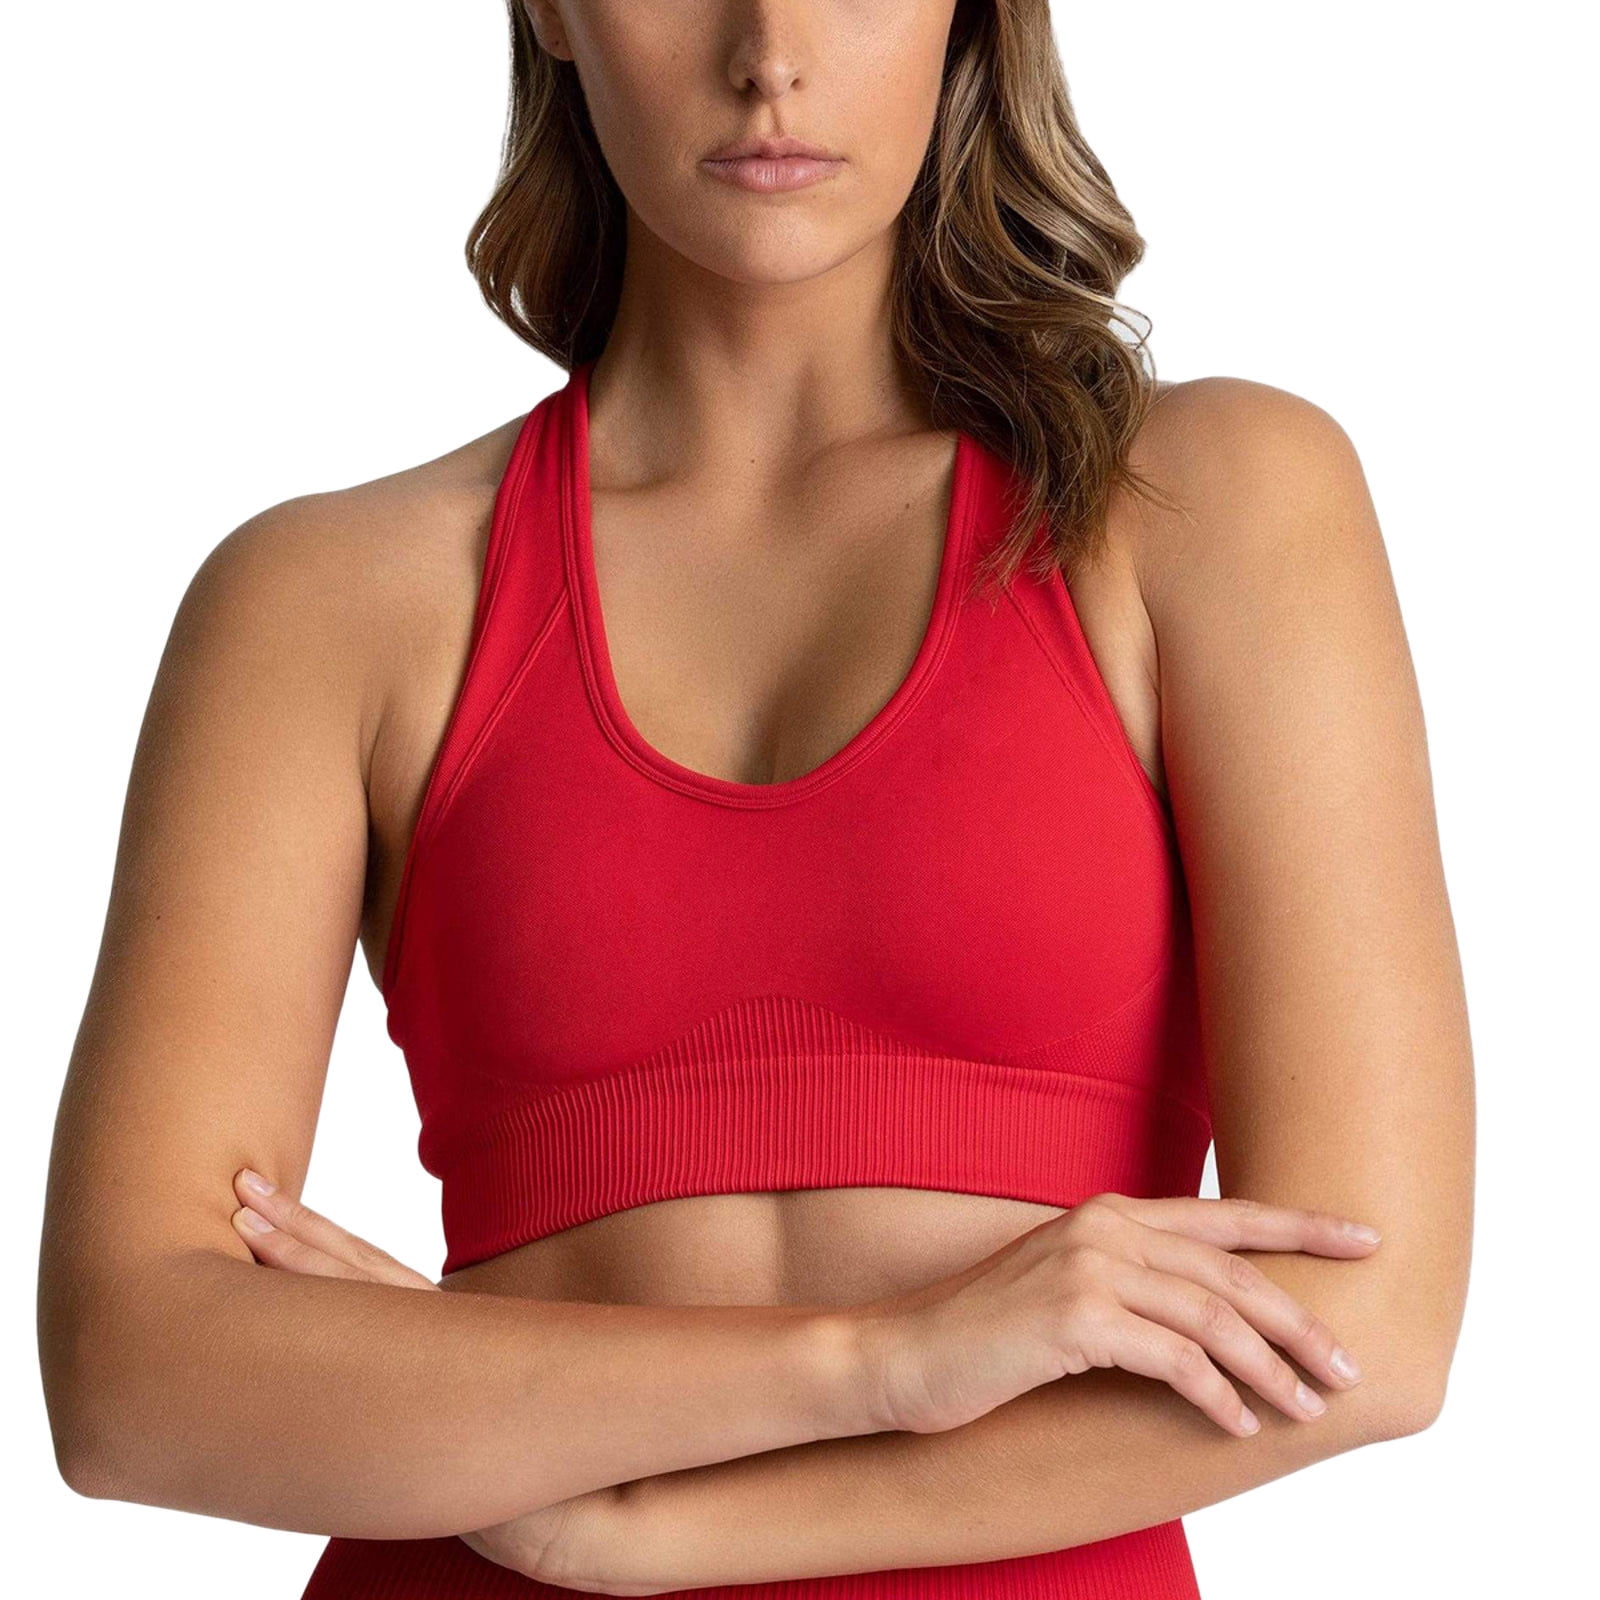 Durtebeua Strappy Bras for Yoga Workout Fitness Low Impact Women's Wireless  Sports Bra 